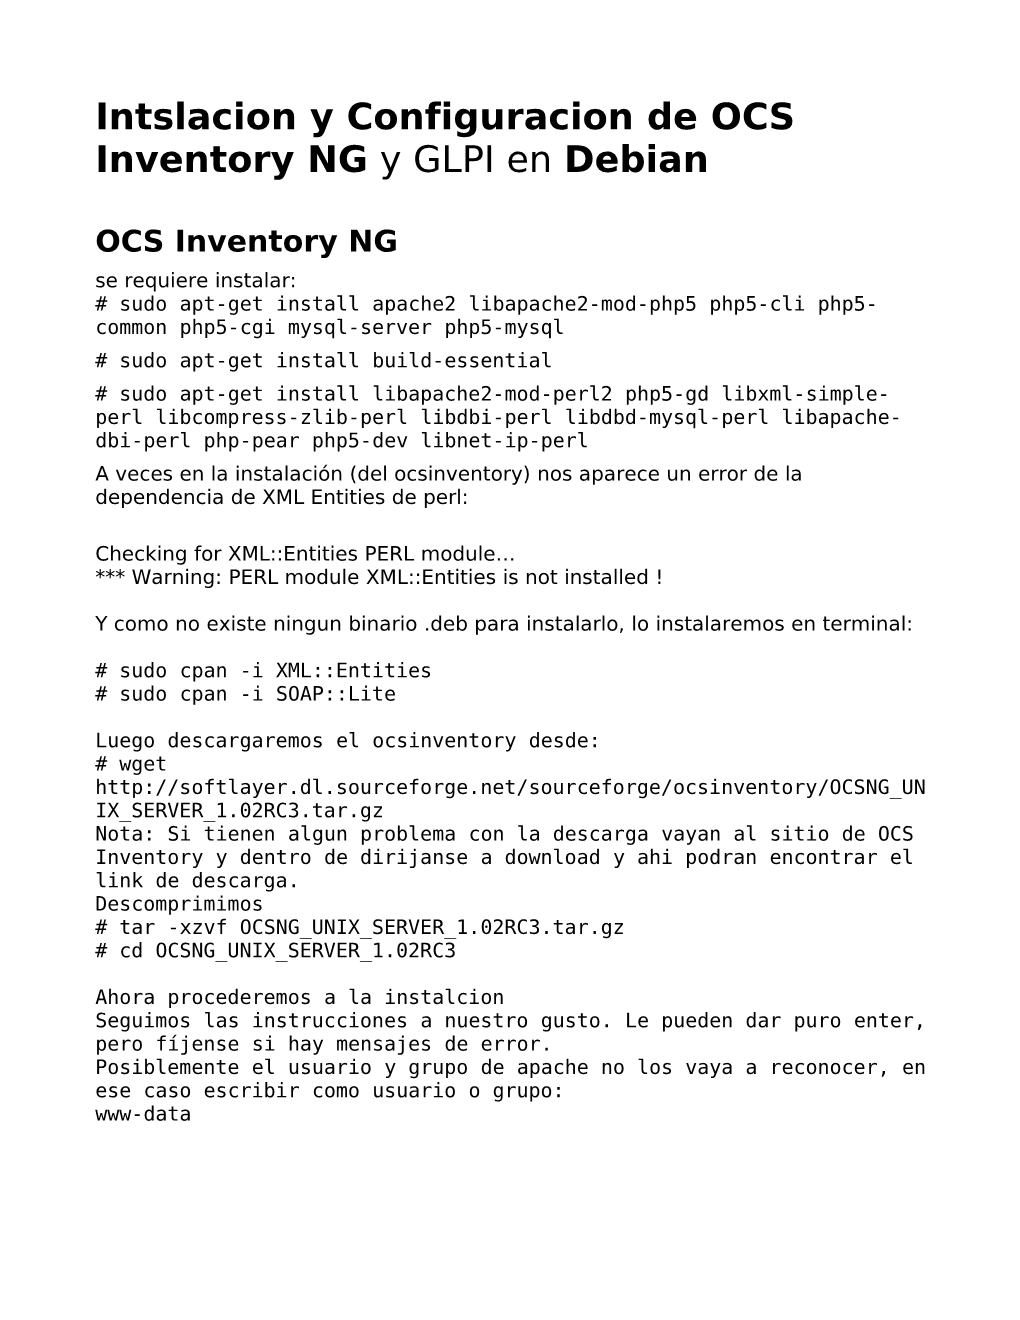 Intslacion Y Configuracion De OCS Inventory NG Y GLPI En Debian